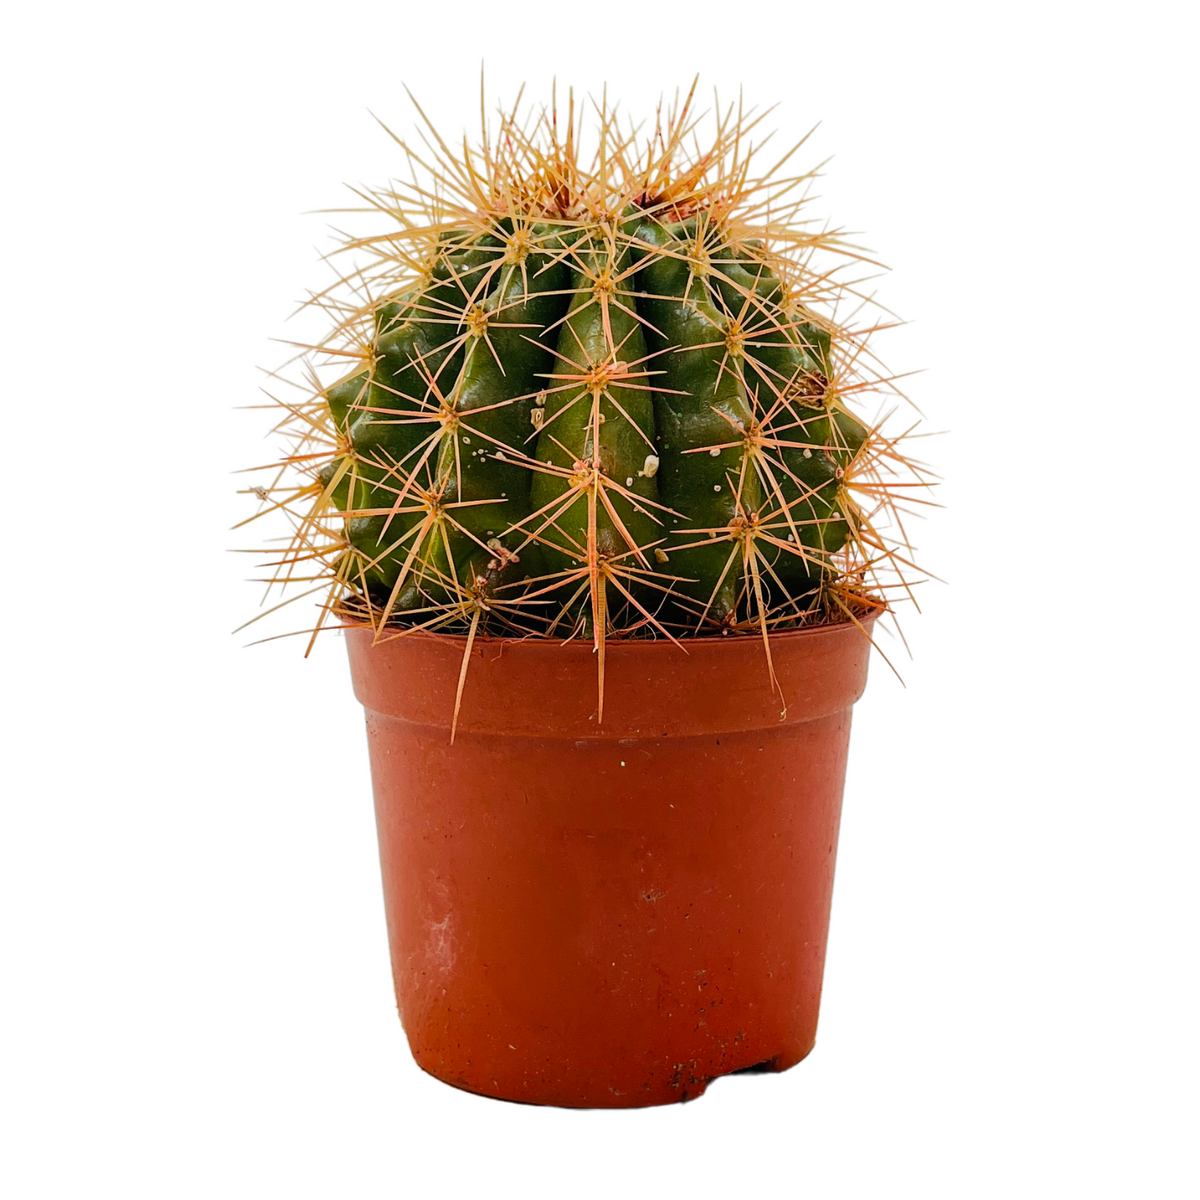 Ball Cactus (Parodia magnifica) - Live Plant (Home & Graden)